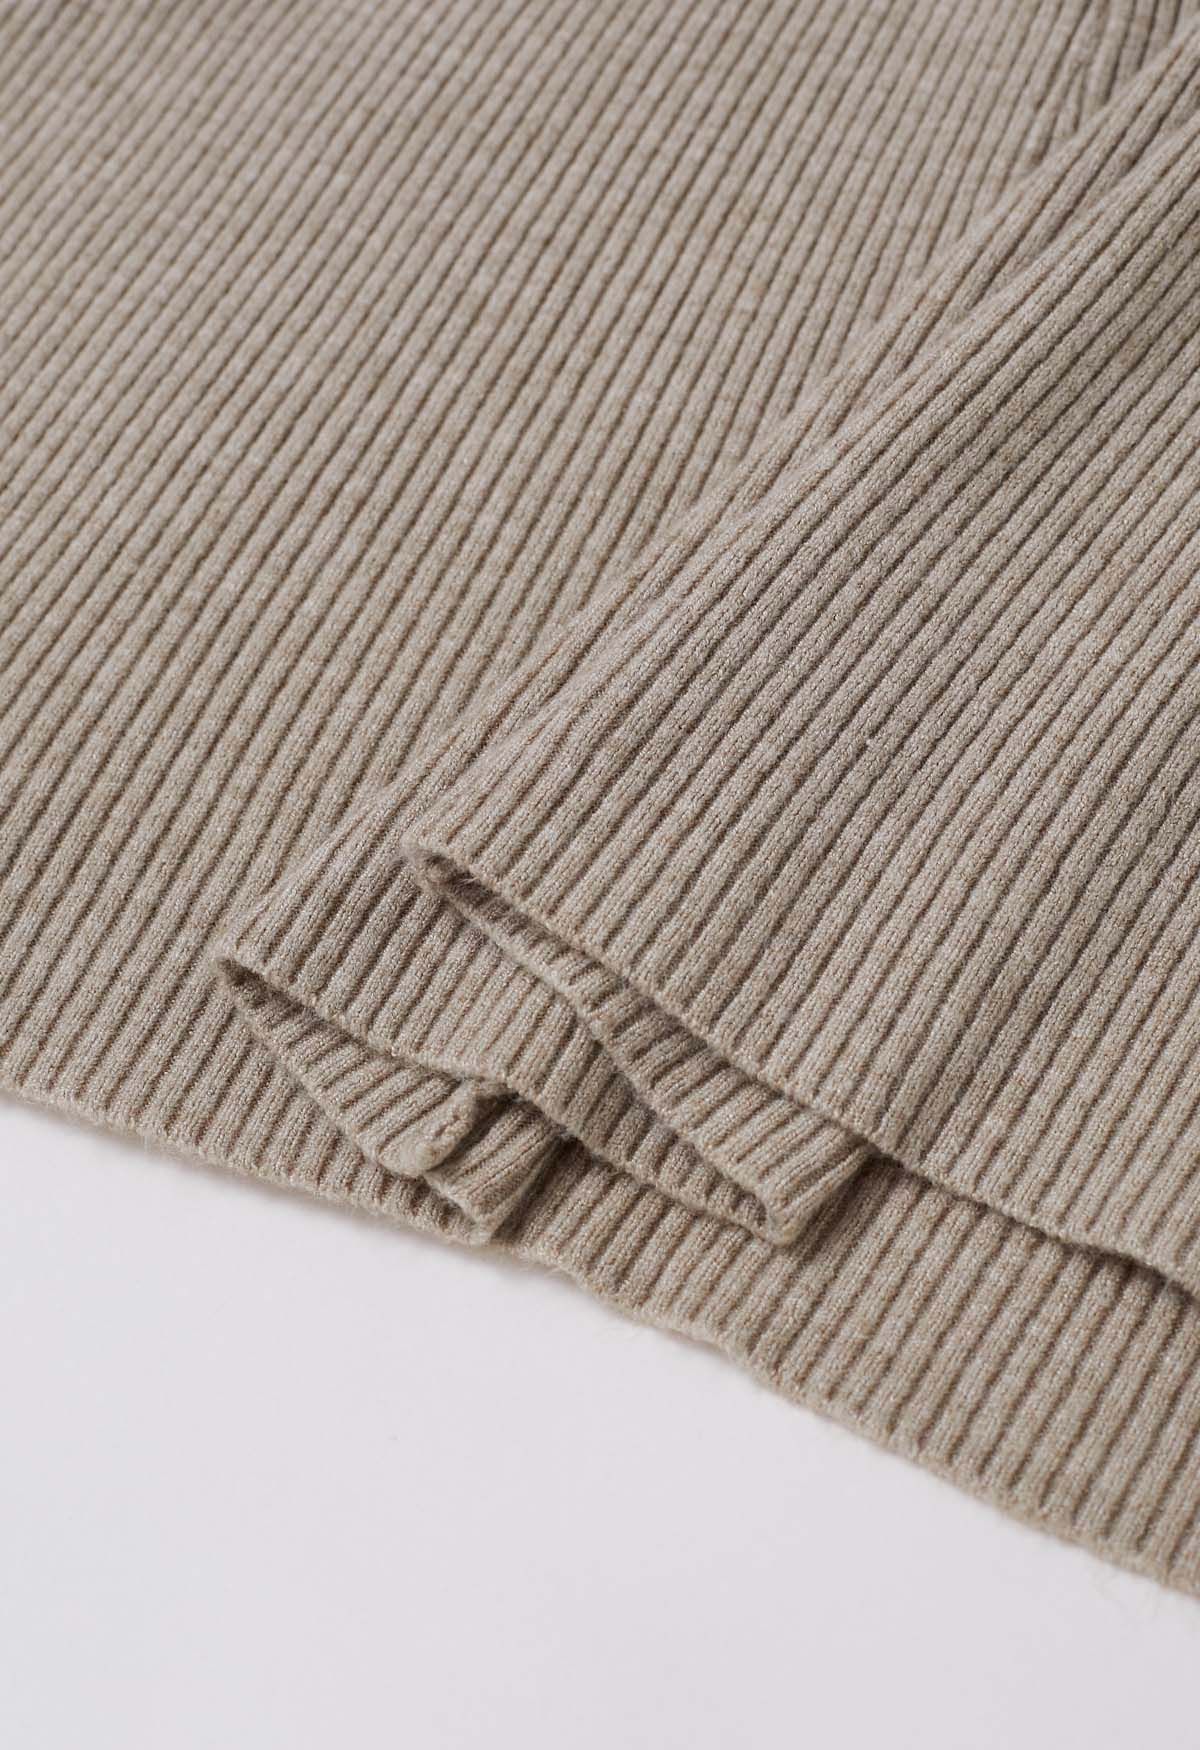 Cross Waist Detail Faux-Wrap Knit Dress in Oatmeal